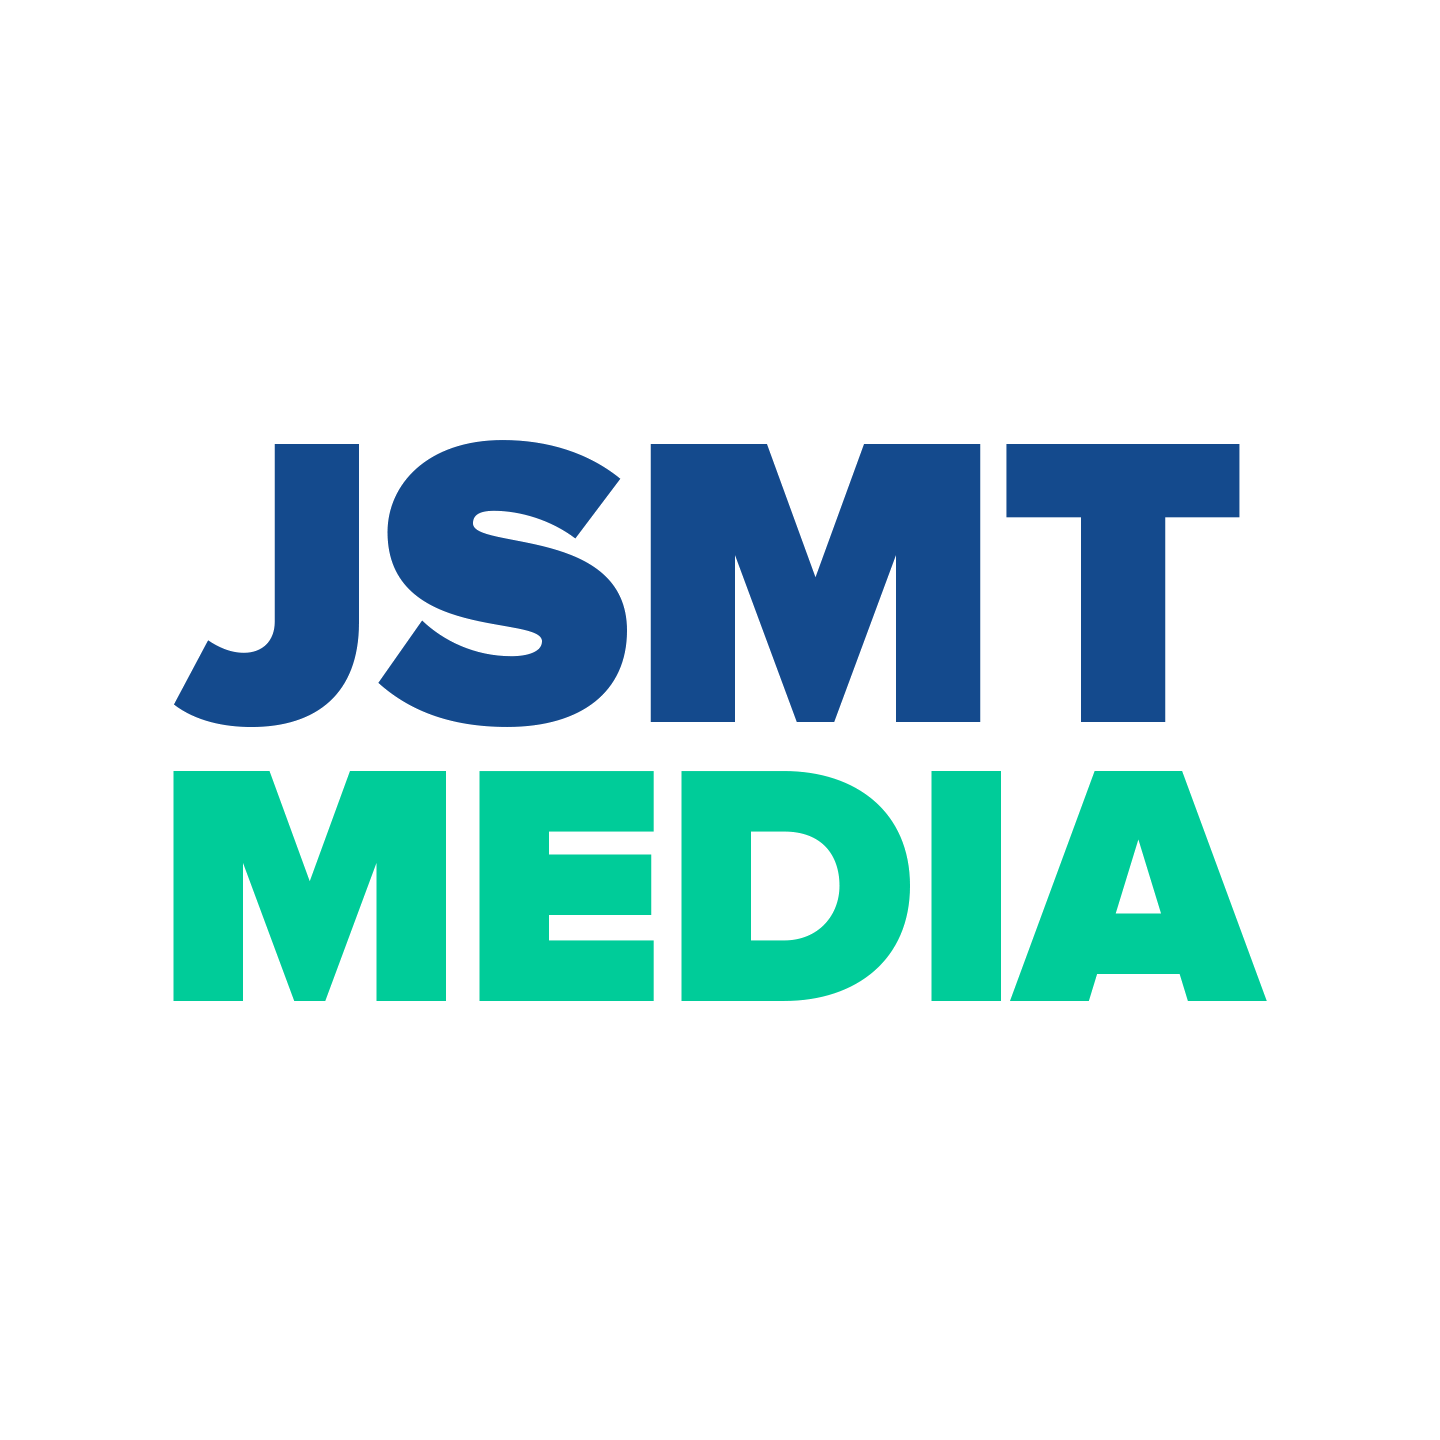 JSMT Media logo